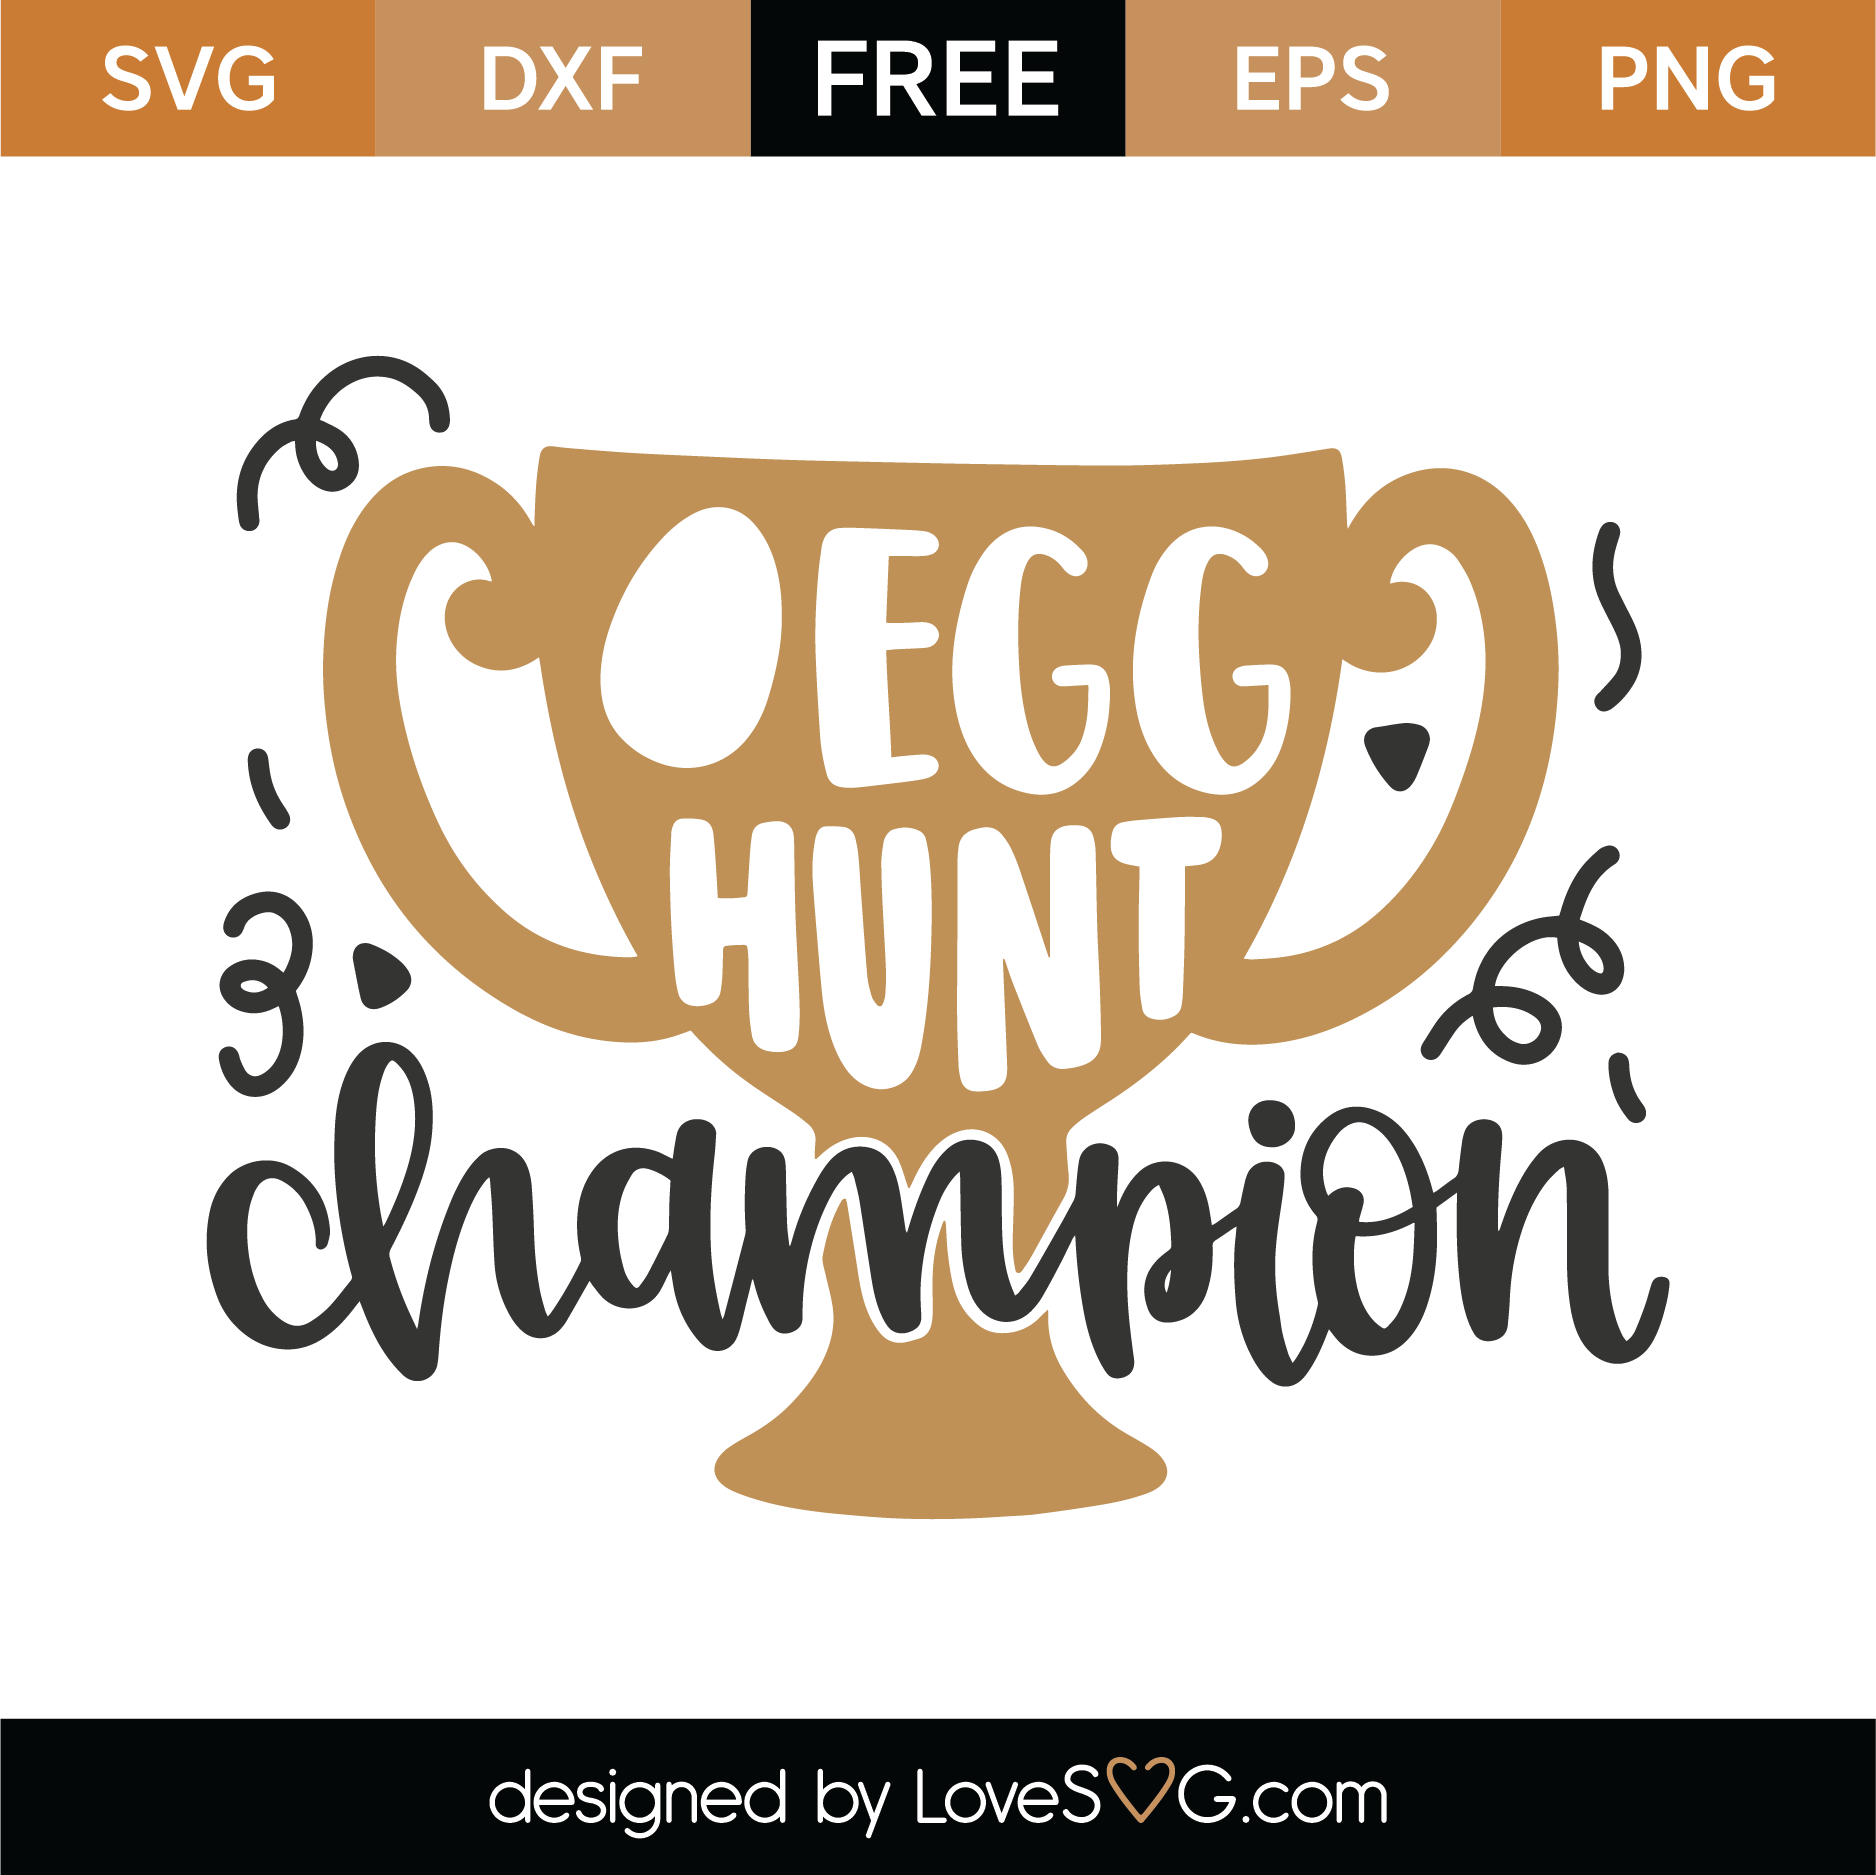 Download Free Egg Hunt Champion SVG Cut File | Lovesvg.com